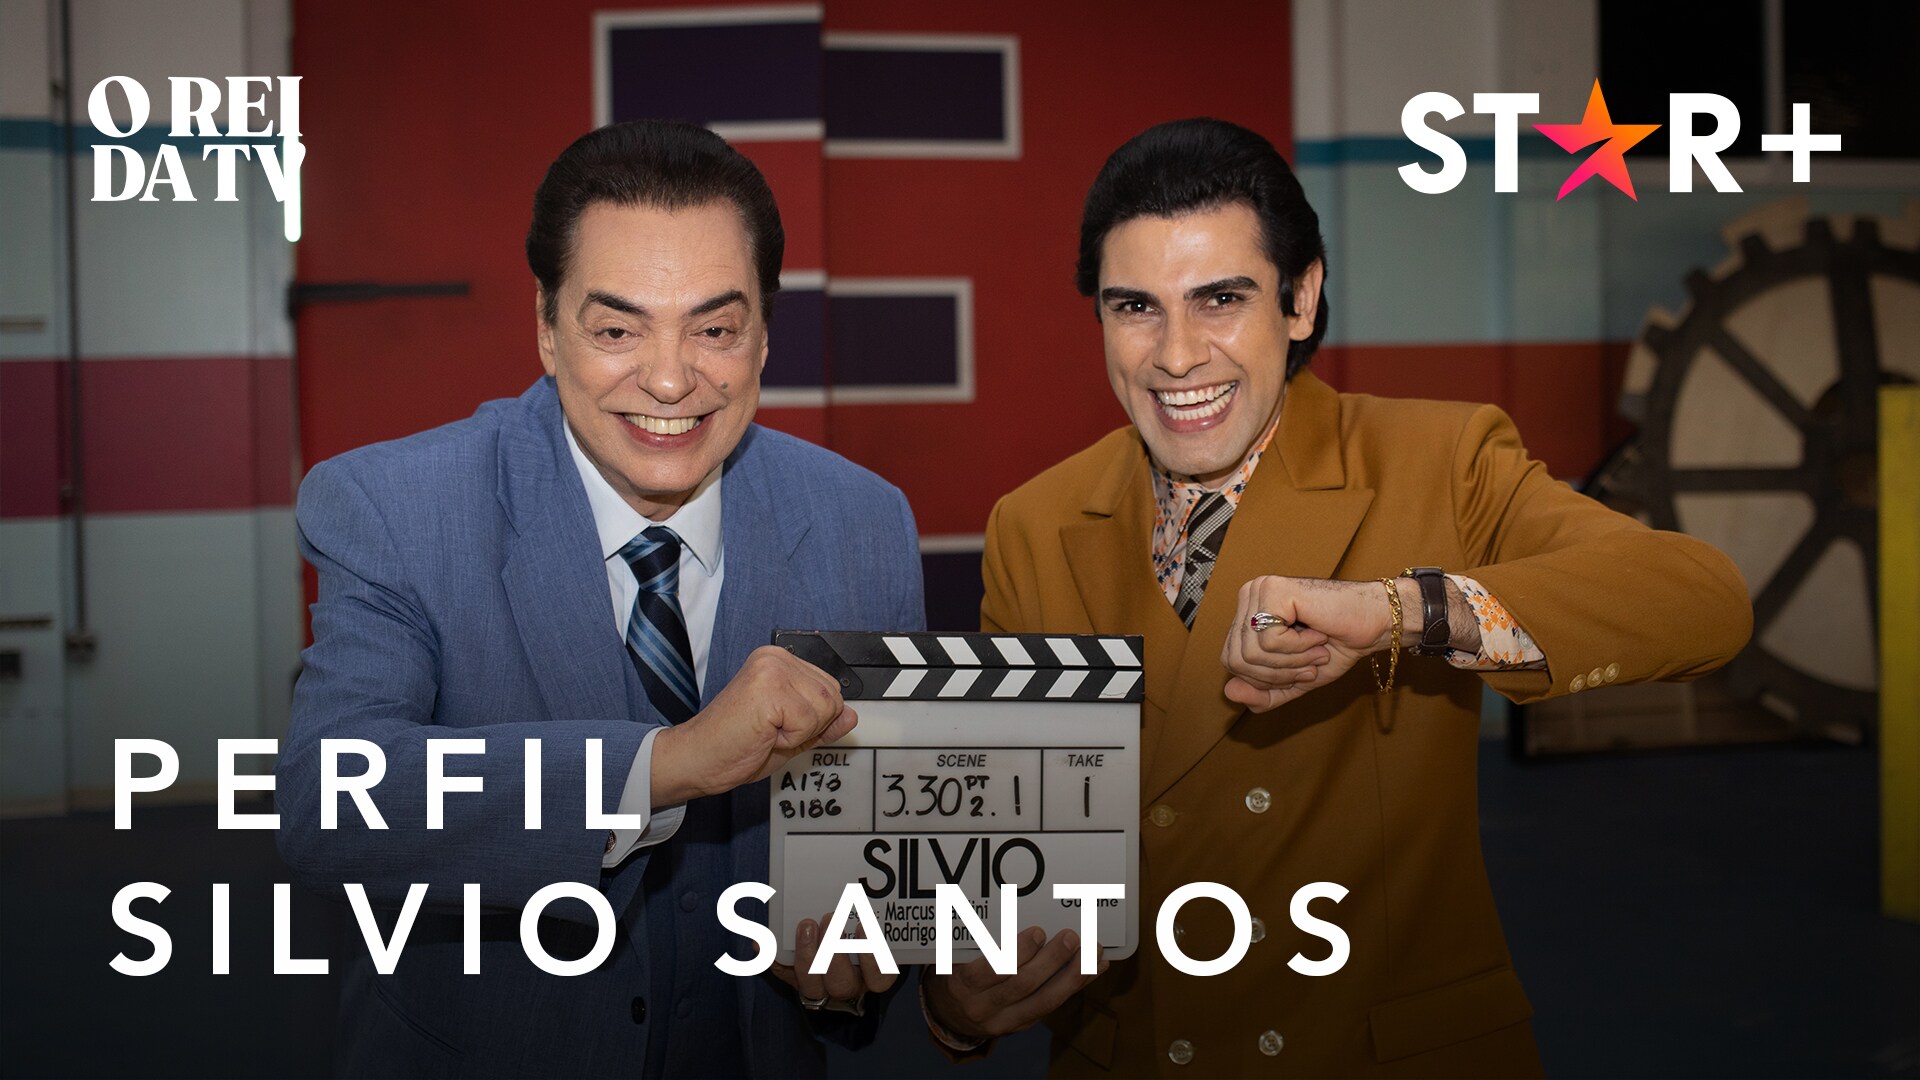 O Rei da TV | Perfil - Silvio Santos | Star+